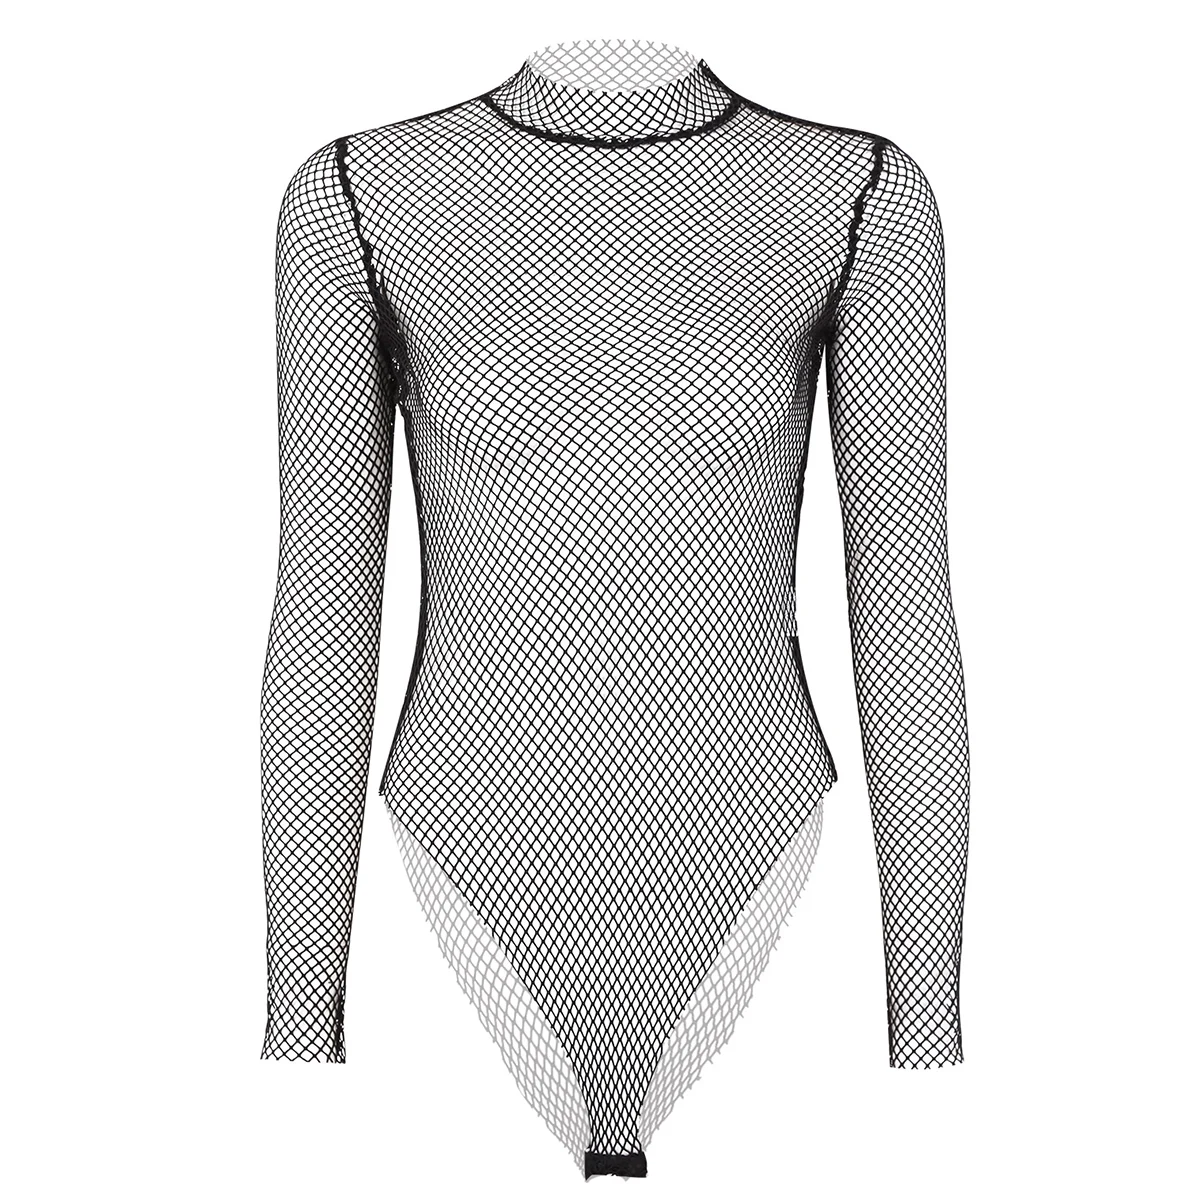 DPOIS, сексуальный женский купальник-трико, прозрачный сетчатый осенний тонкий корсет с высокой горловиной, боди, костюм, купальник - Цвет: Black Type A